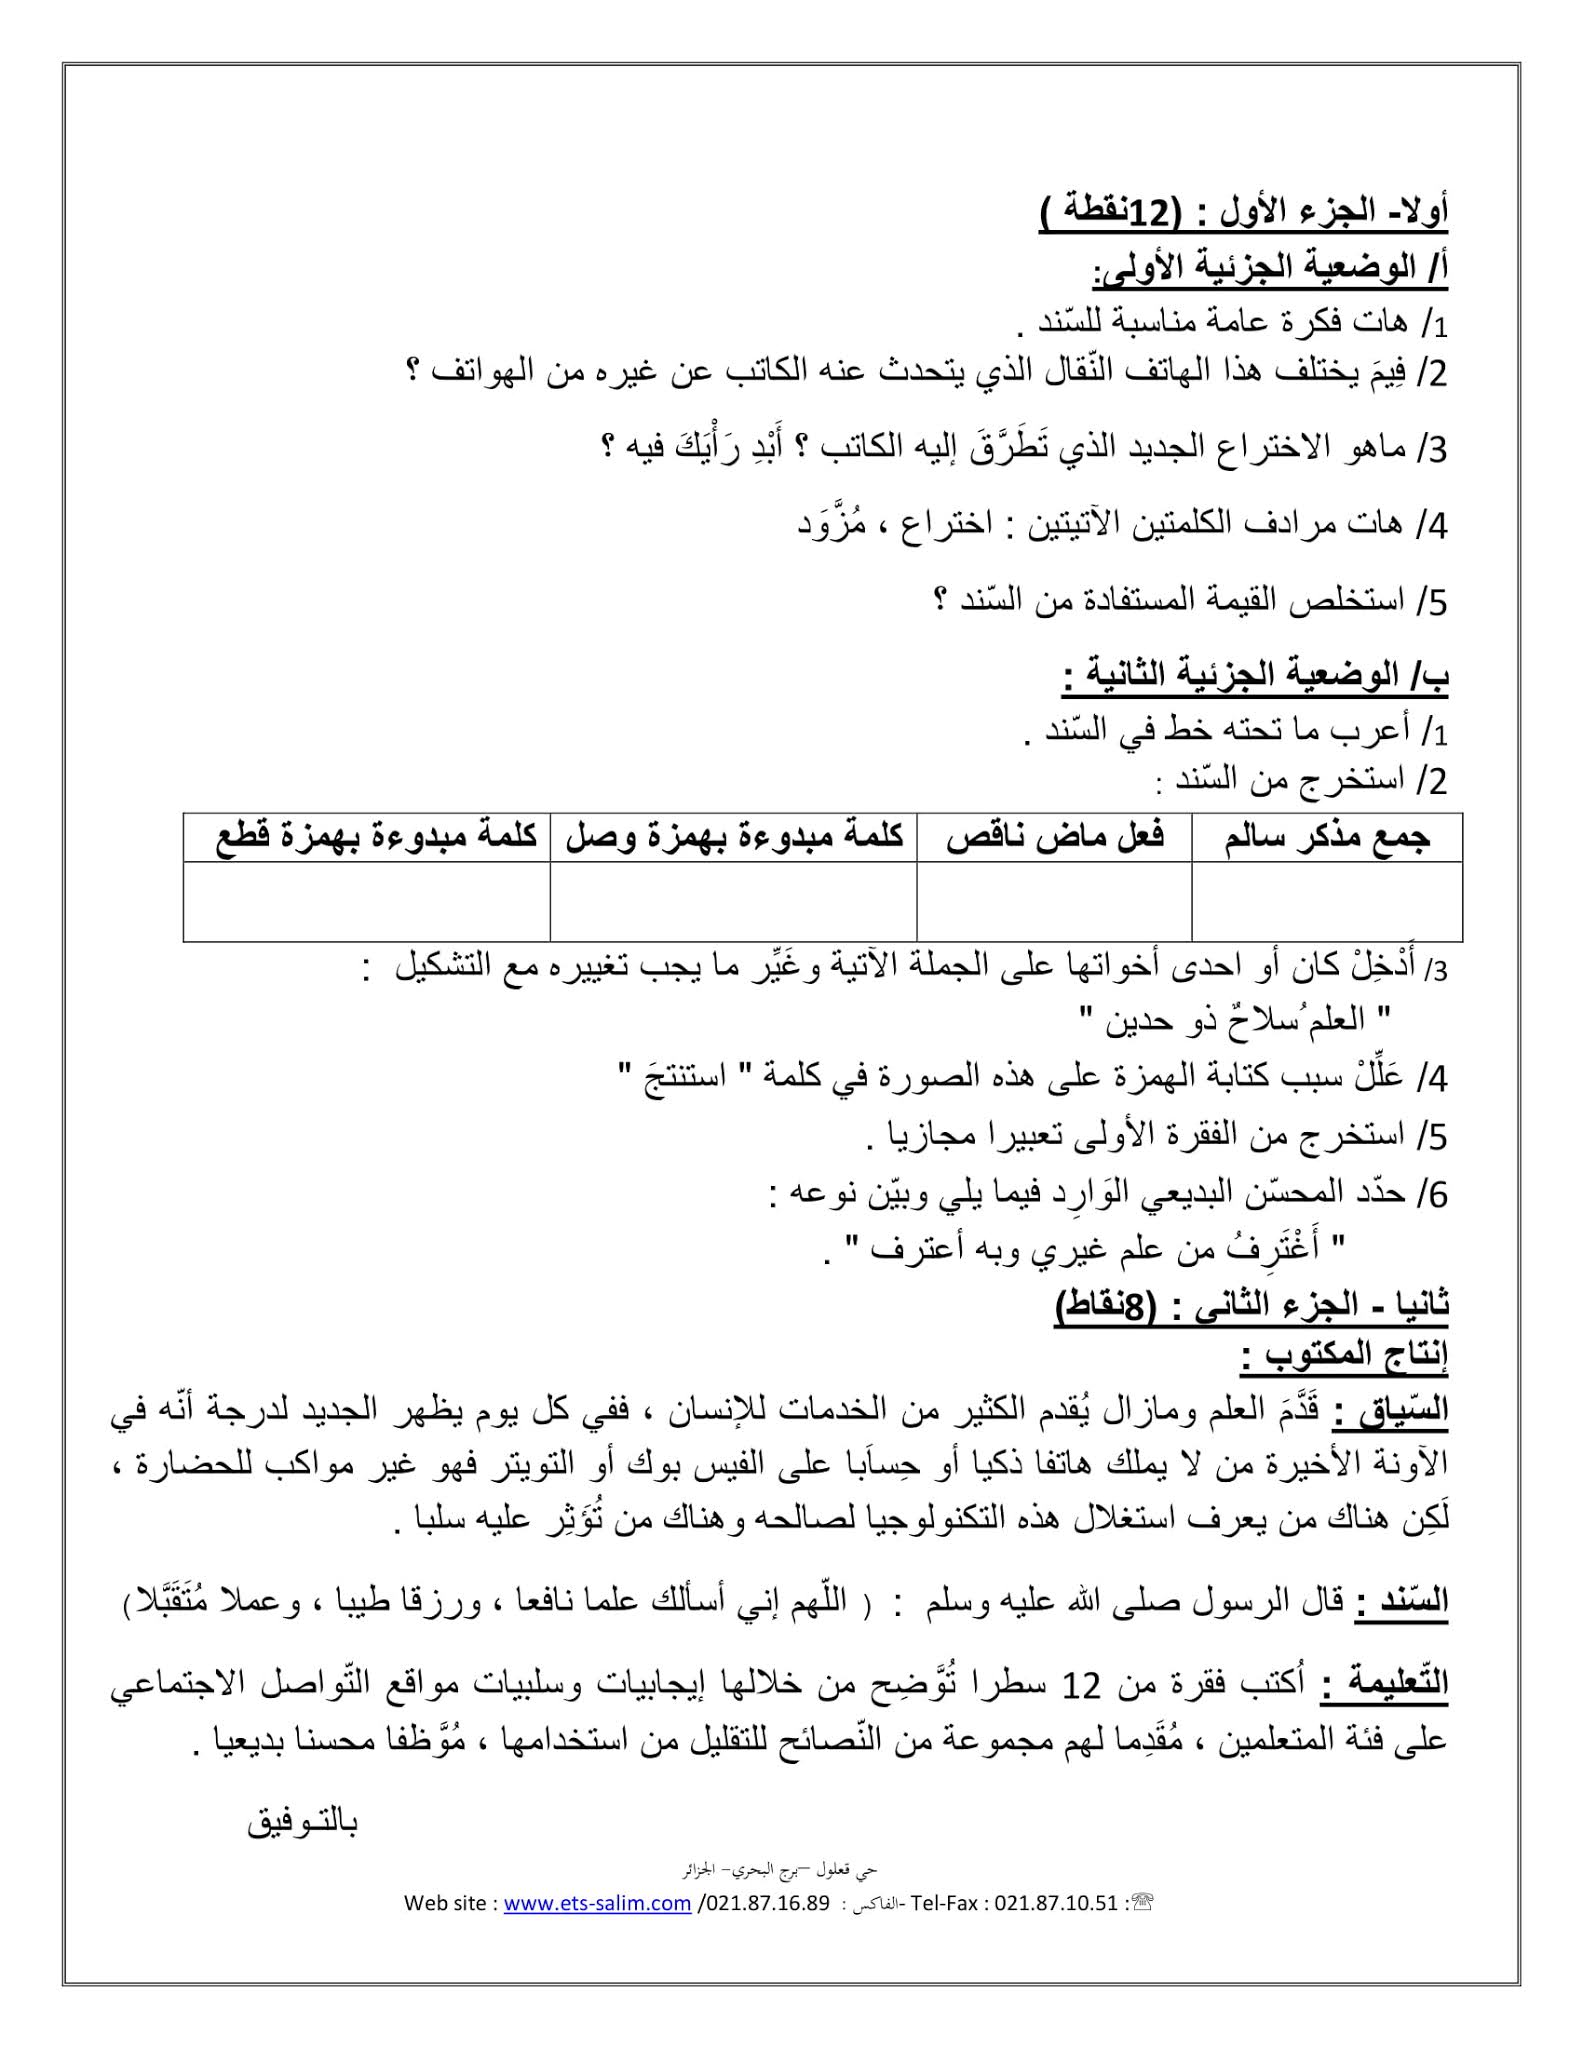 إختبار اللغة العربية الفصل الثاني للسنة الأولى متوسط - الجيل الثاني نموذج 5